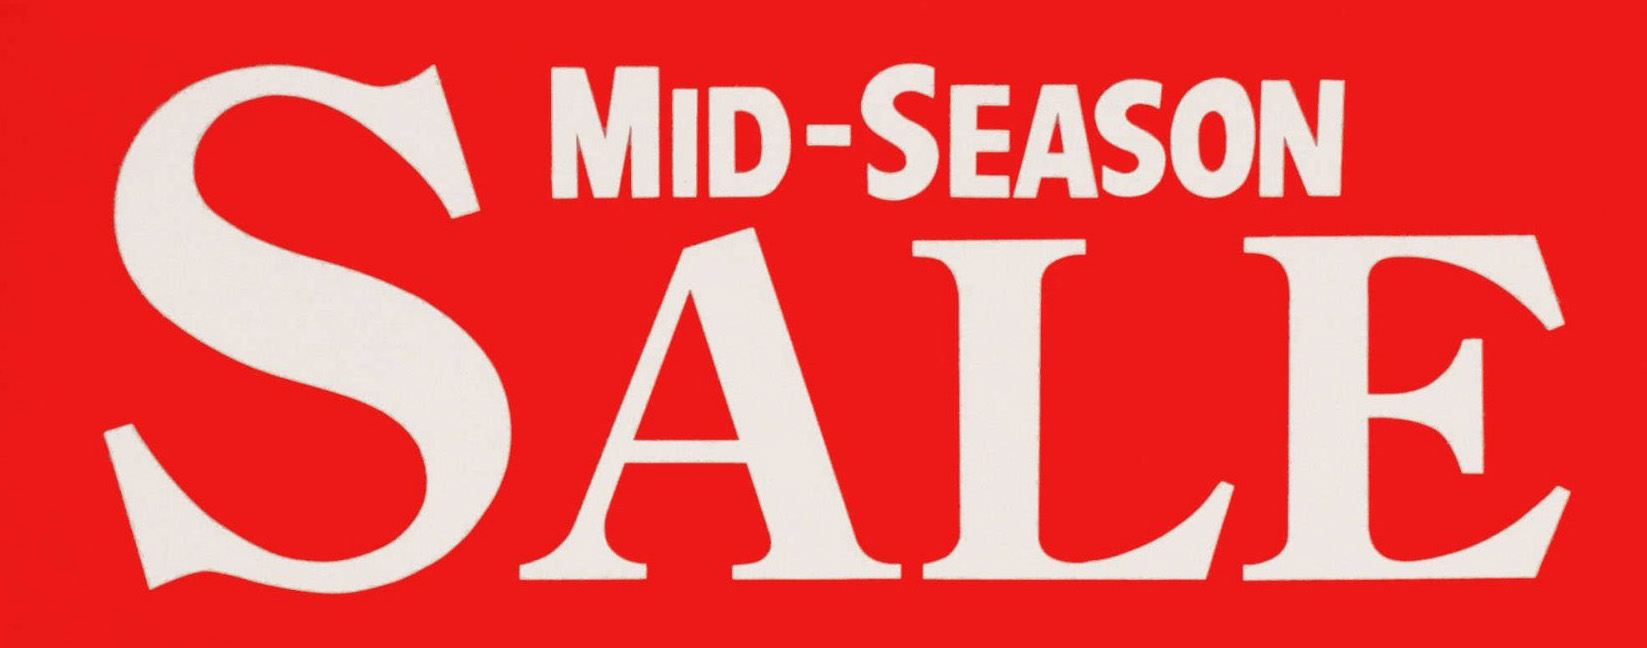 mid season sale now on